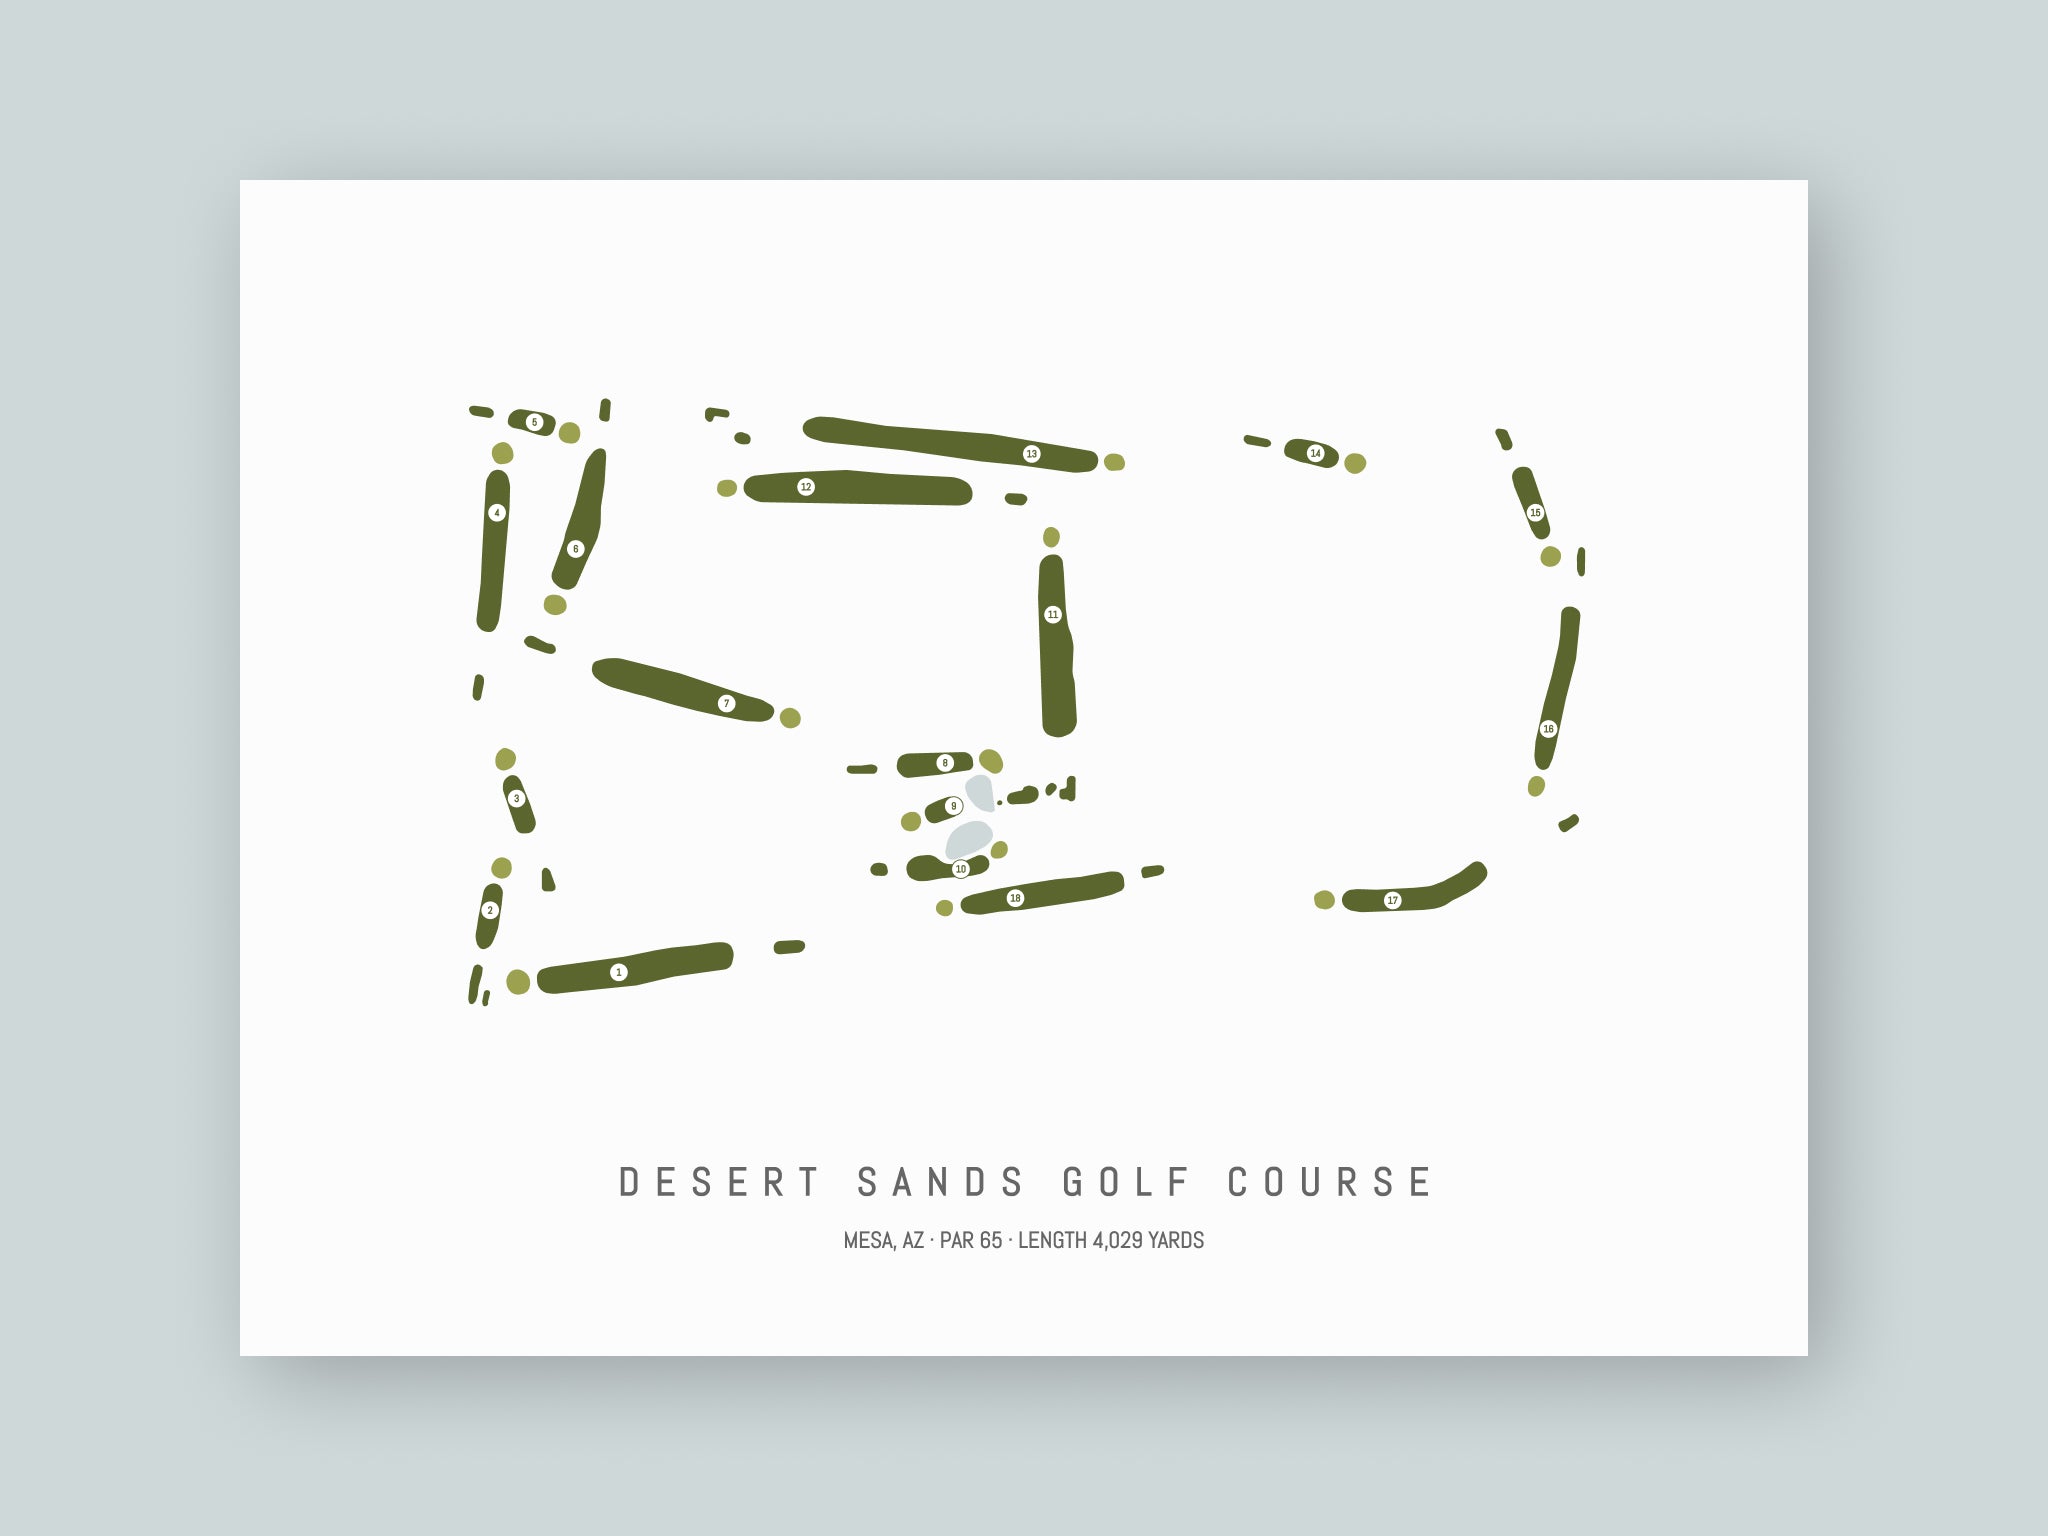 Desert Sands Golf Course